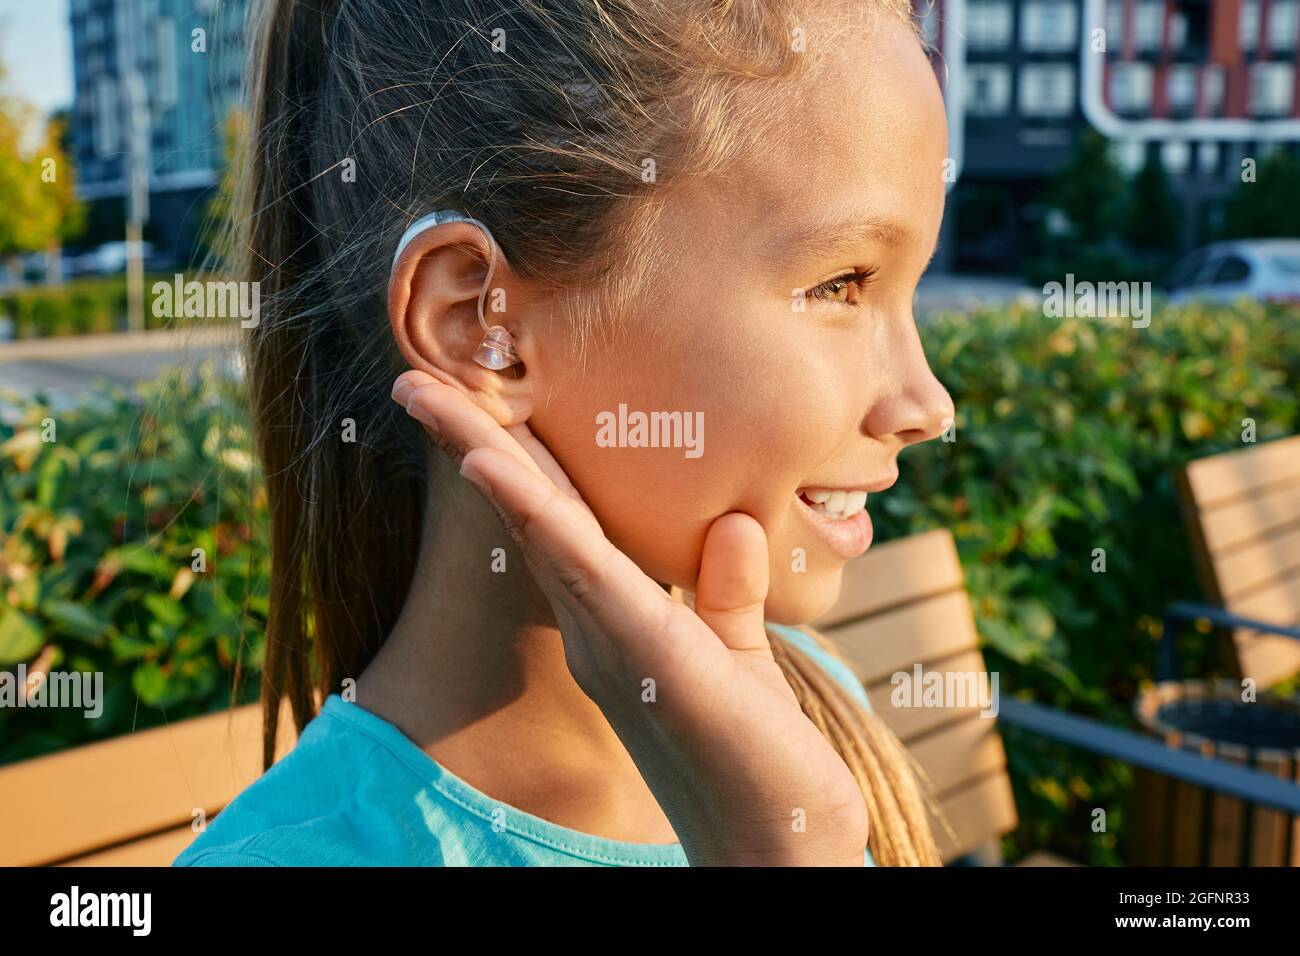 Lächelndes weibliches Kind mit einem Hörgerät hinter dem Ohr hält die Hand nahe am Ohr, um im Freien zu hören und ein Leben lang zu leben Stockfoto